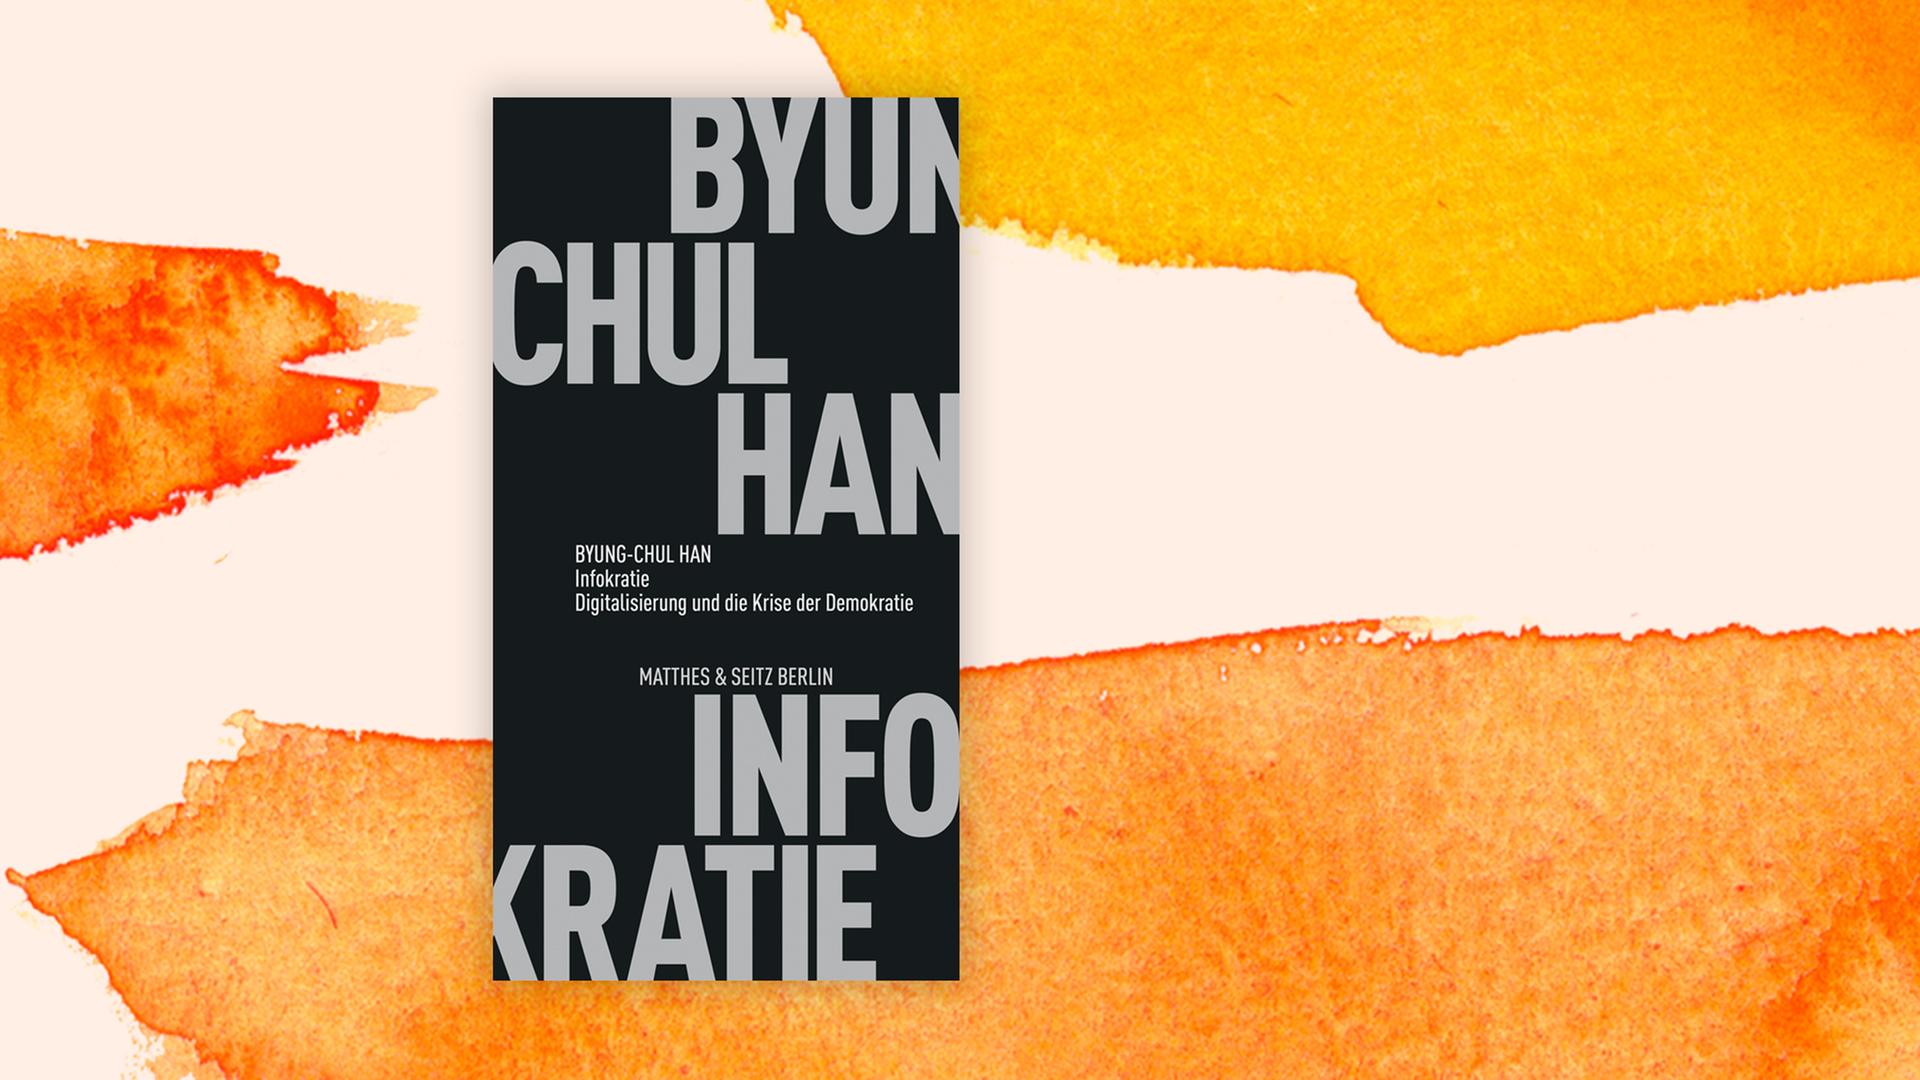 Das Buchcover "Infokratie" von Byung-Chul Han vor einem grafischen Hintergrund.